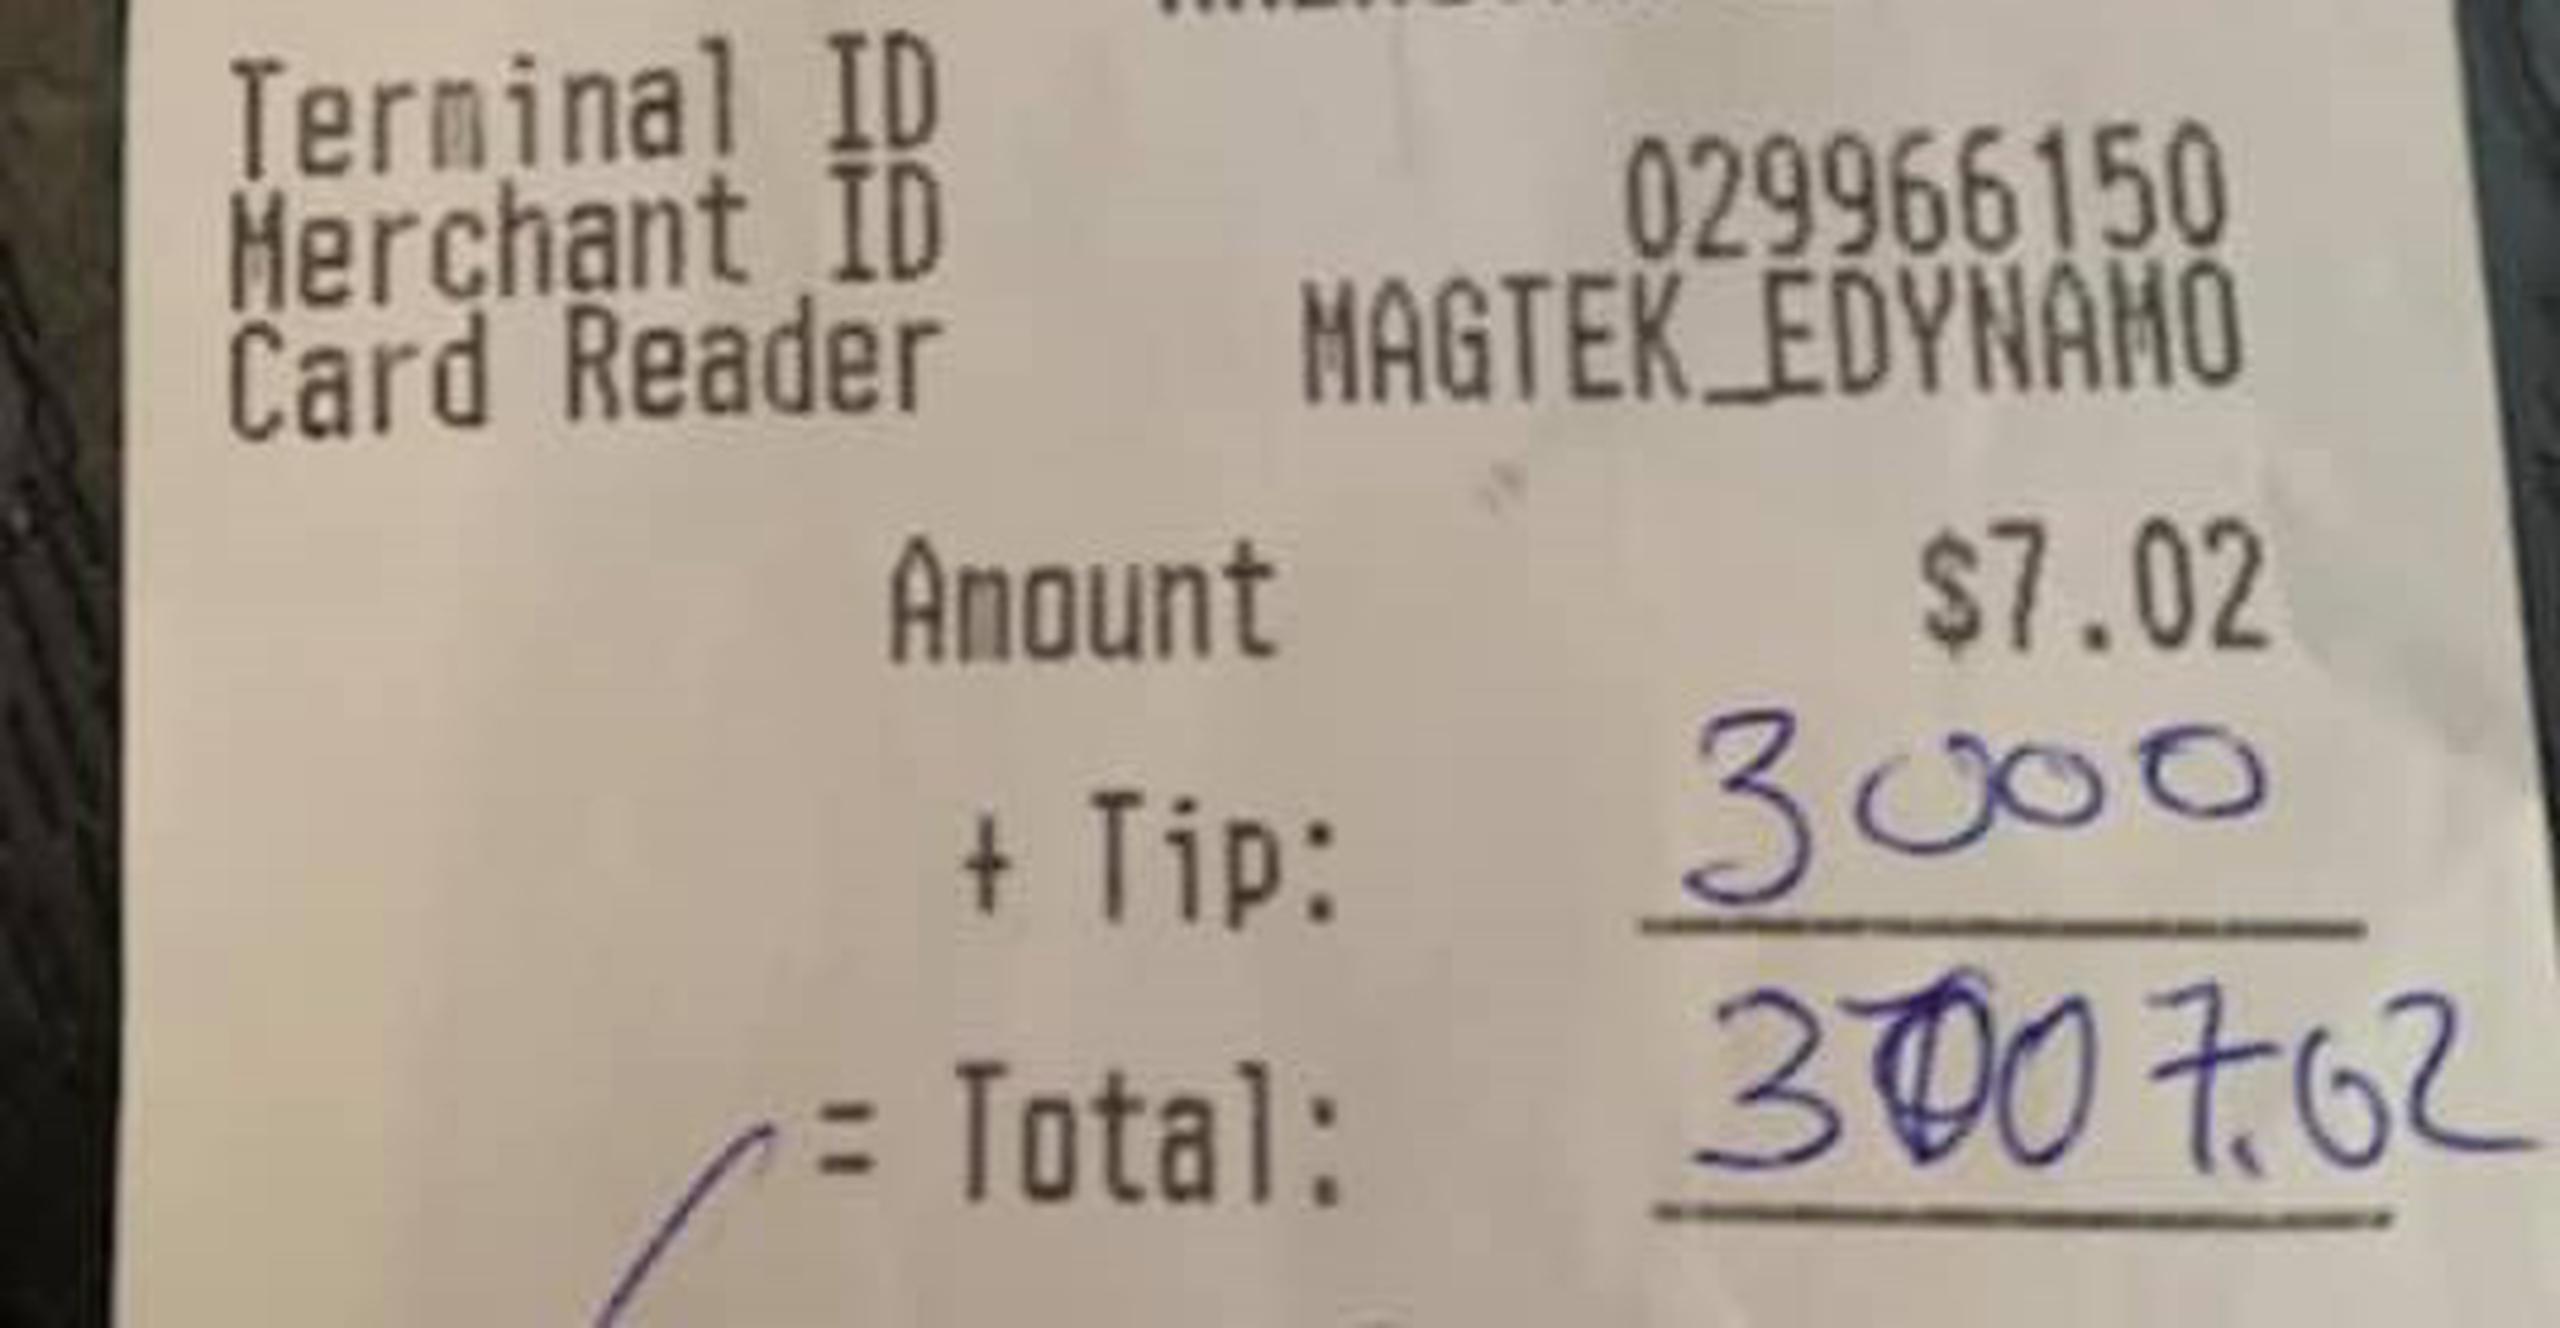 El dueño del restaurante dijo que él y sus empleados estaban “humildemente agradecidos por este gesto increíblemente bondadoso y maravilloso”.